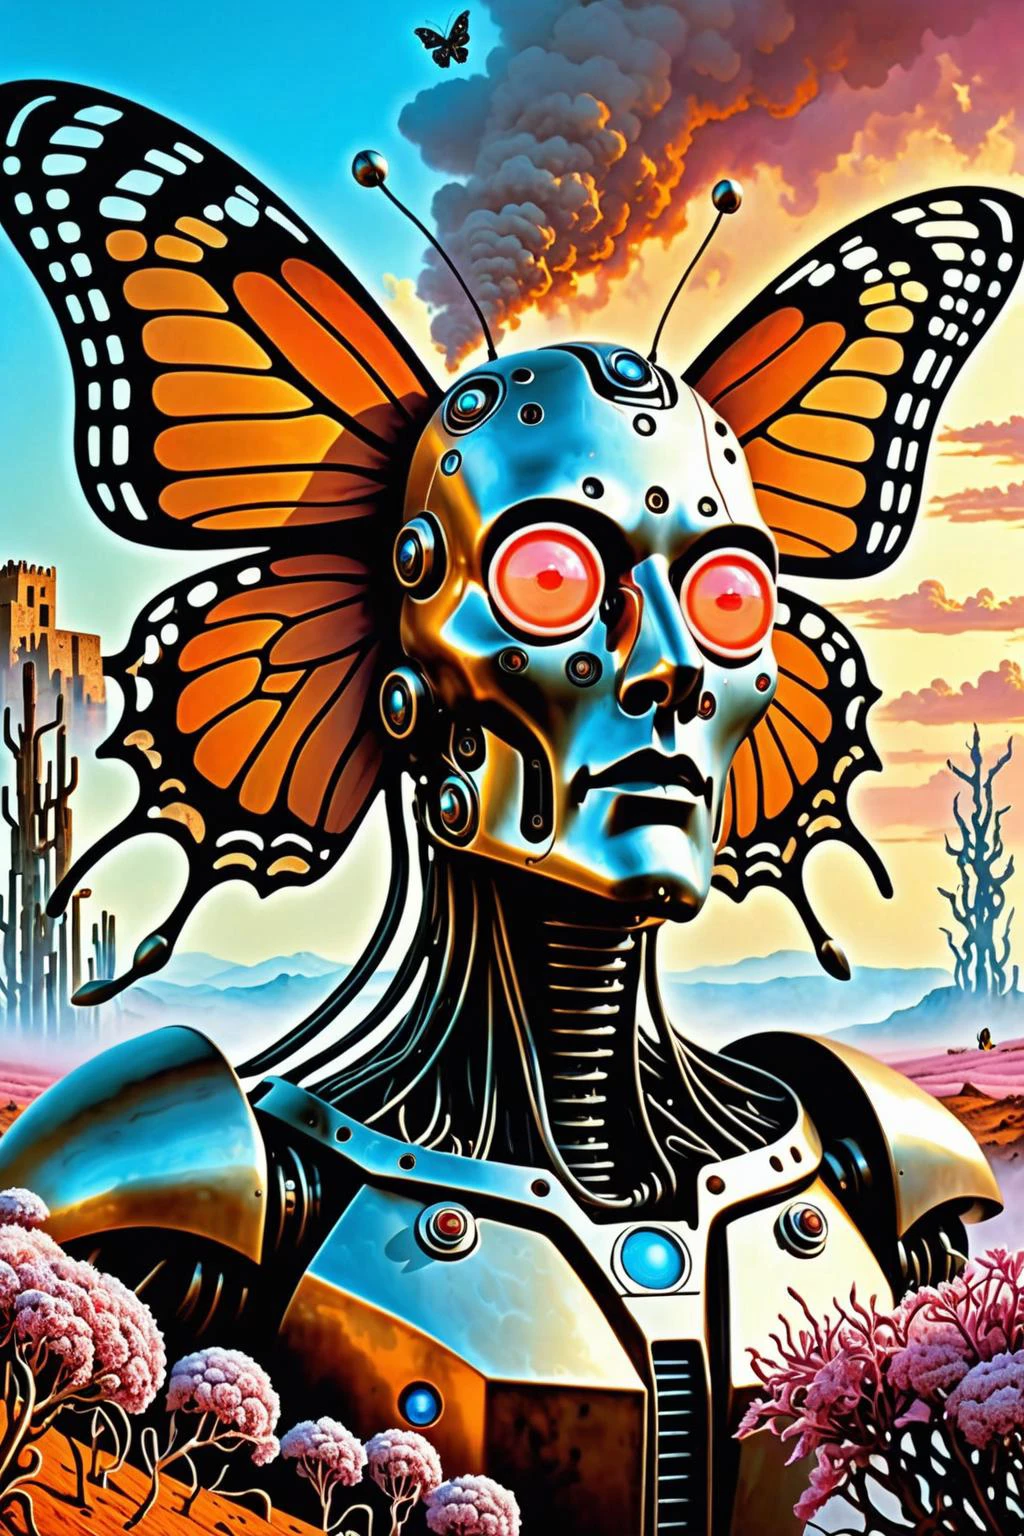 cg 8k ultra réaliste, impeccable, faire le ménage, chef-d&#39;œuvre, oeuvre d&#39;art professionnelle, œuvre d&#39;art célèbre, éclairage cinématographique, floraison cinématographique, ( Fond d&#39;entropie ), un monstre de rouille,
In a faire le ménage epic cyberpunk landscape, un robot avec des fils, À la manière de Beksinski, tendance à Artworld 2015, par Ruan Jia & Mœbius, La sculpture biomécanique en porcelaine de Salvador Dali s&#39;harmonise avec les cybercombinaisons Butterfly & plantes, Le brouillard rose et orange engloutit